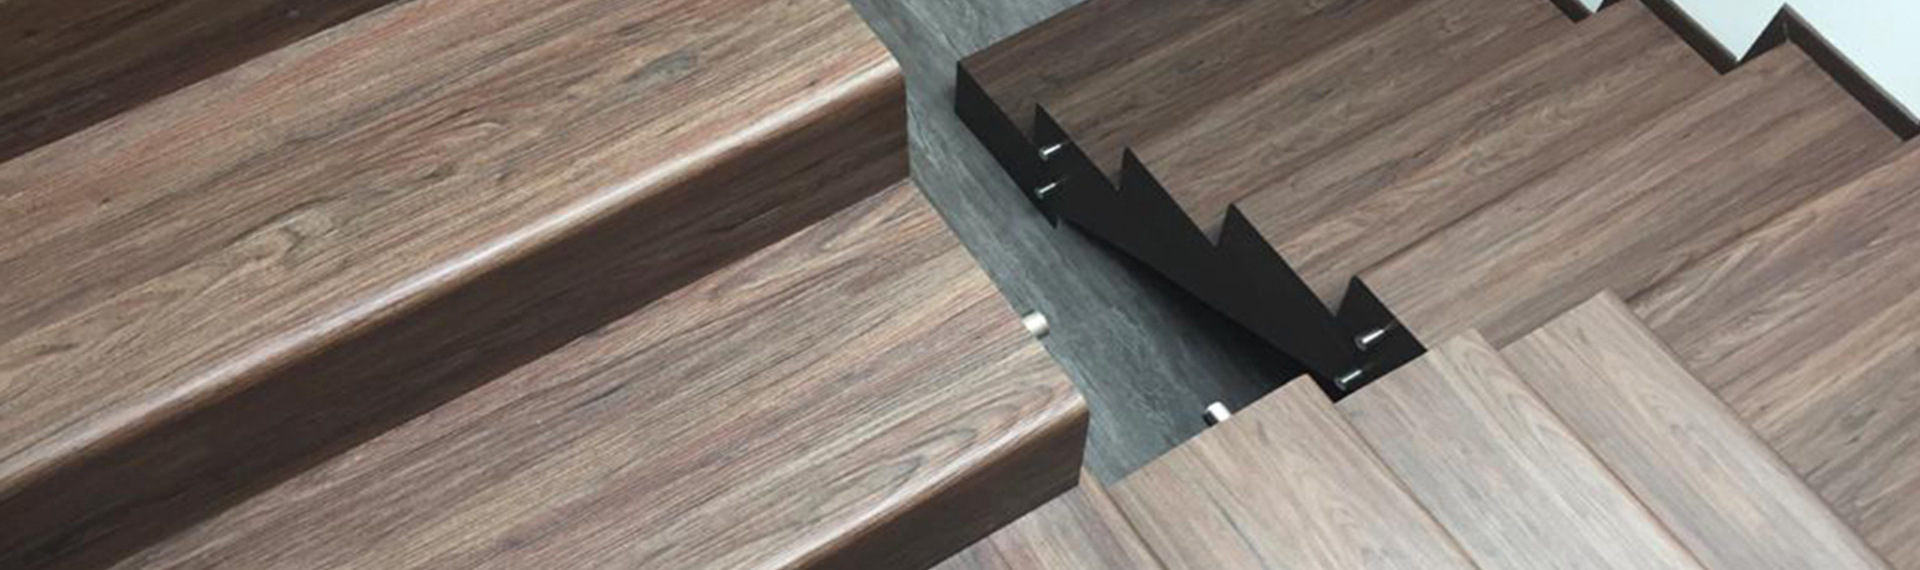 escaleras con recubrimiento tipo madera